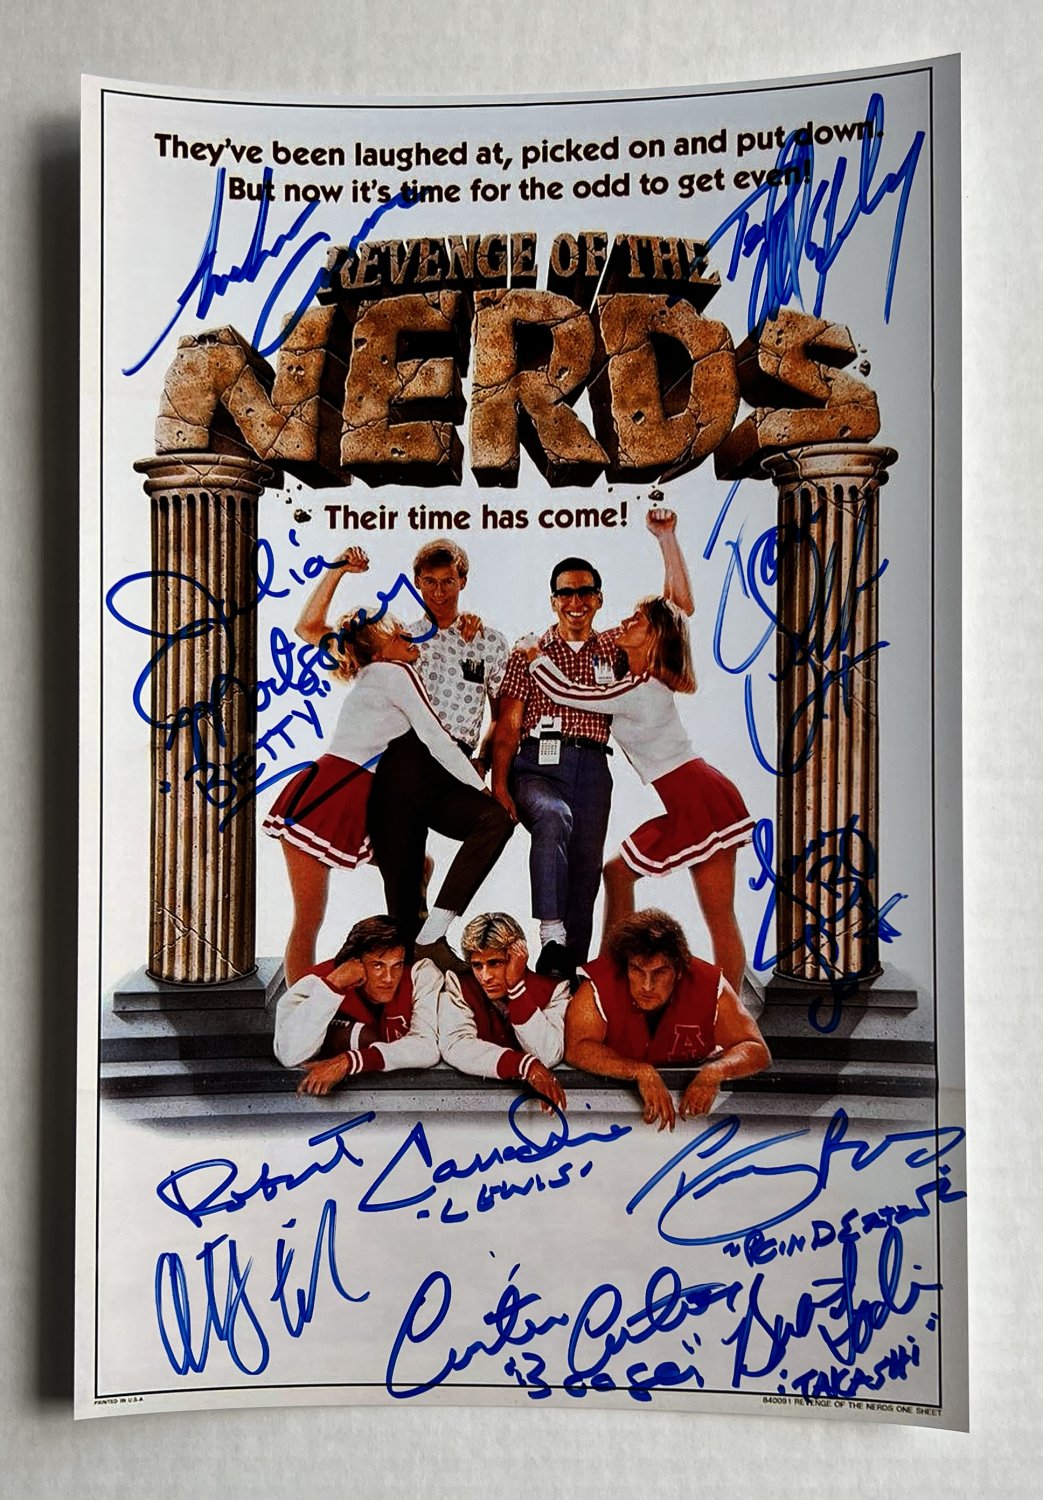 Revenge of the Nerds cast signed autographed 8x12 photo Robert Carradine Anthony Edwards